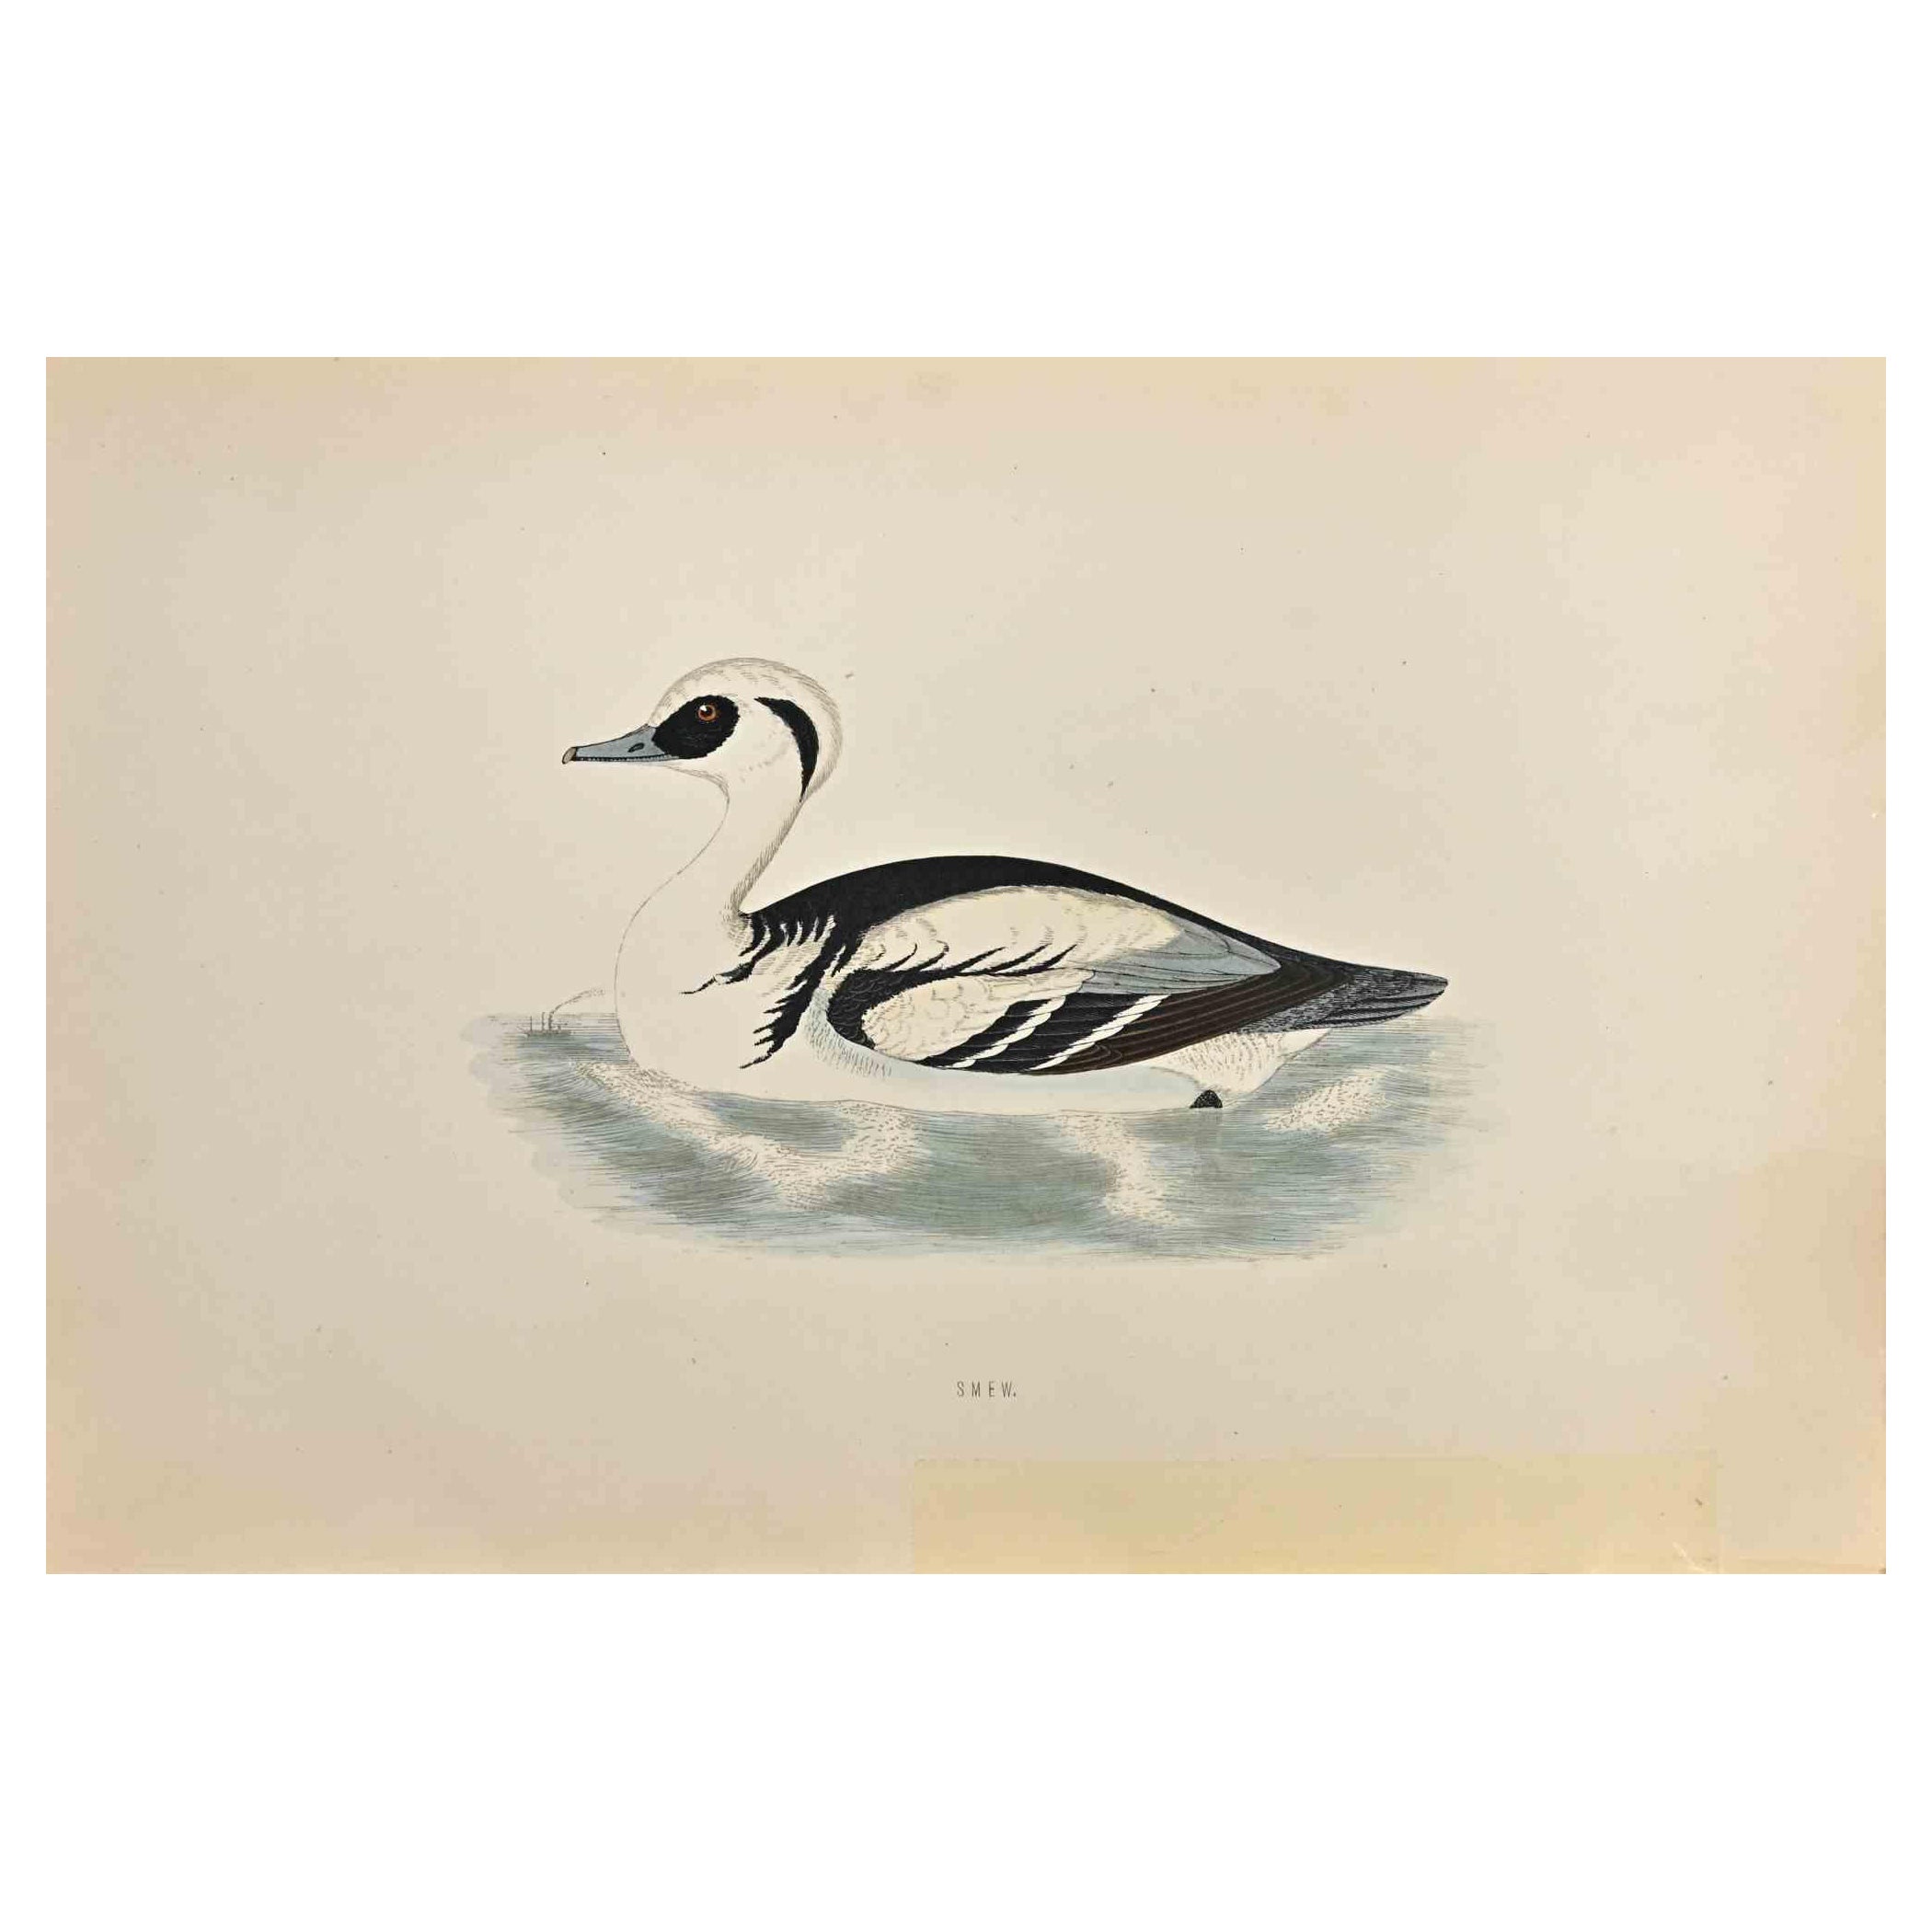 Smew est une œuvre d'art moderne réalisée en 1870 par l'artiste britannique Alexander Francis Lydon (1836-1917) . 

Gravure sur bois, coloriée à la main, publiée par London, Bell & Sons, 1870.  Nom de l'oiseau imprimé sur la plaque. Cette œuvre fait